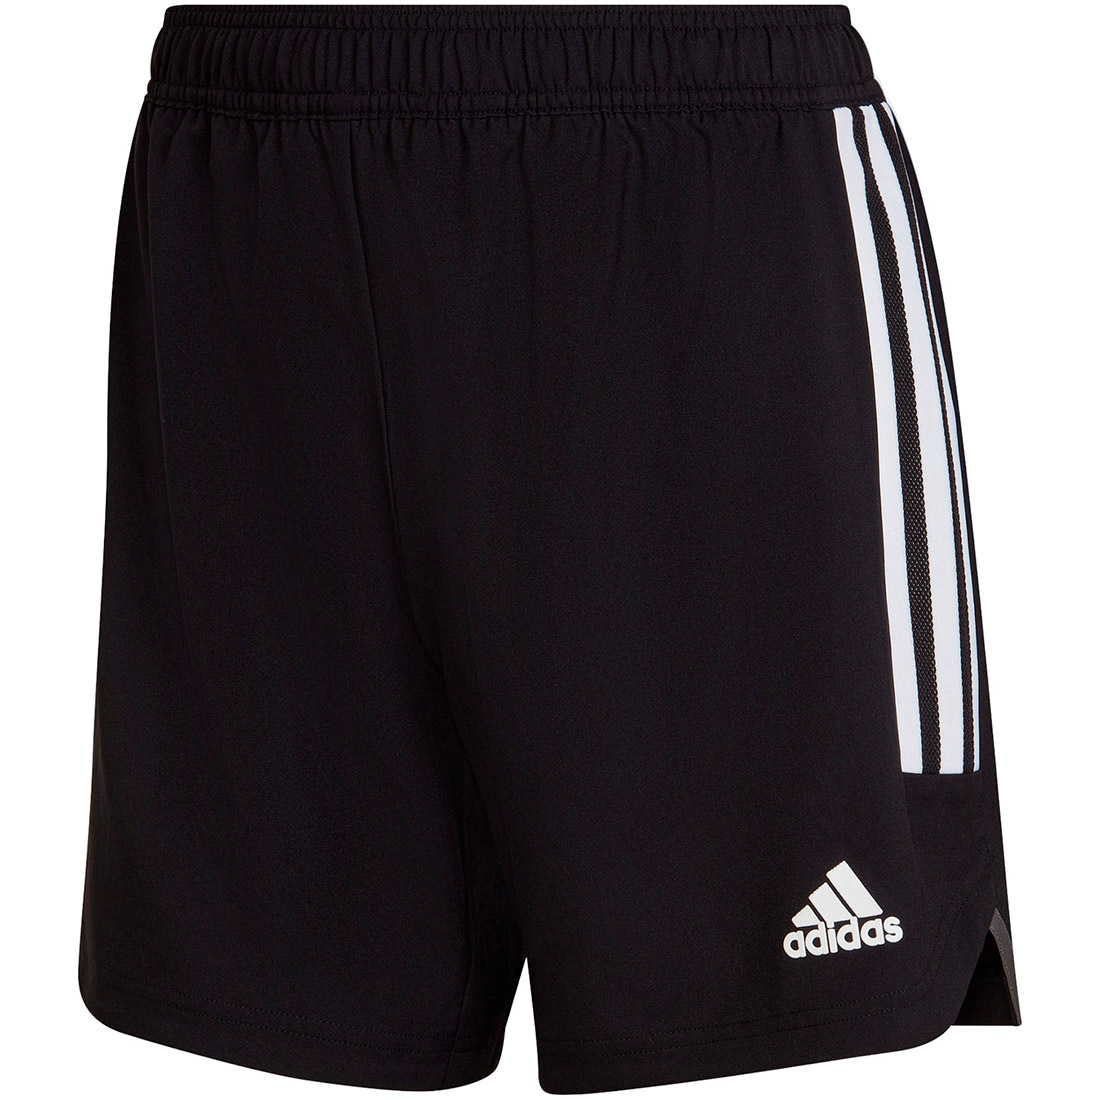 Adidas Damen MD Shorts Condivo 22 schwarz-weiß